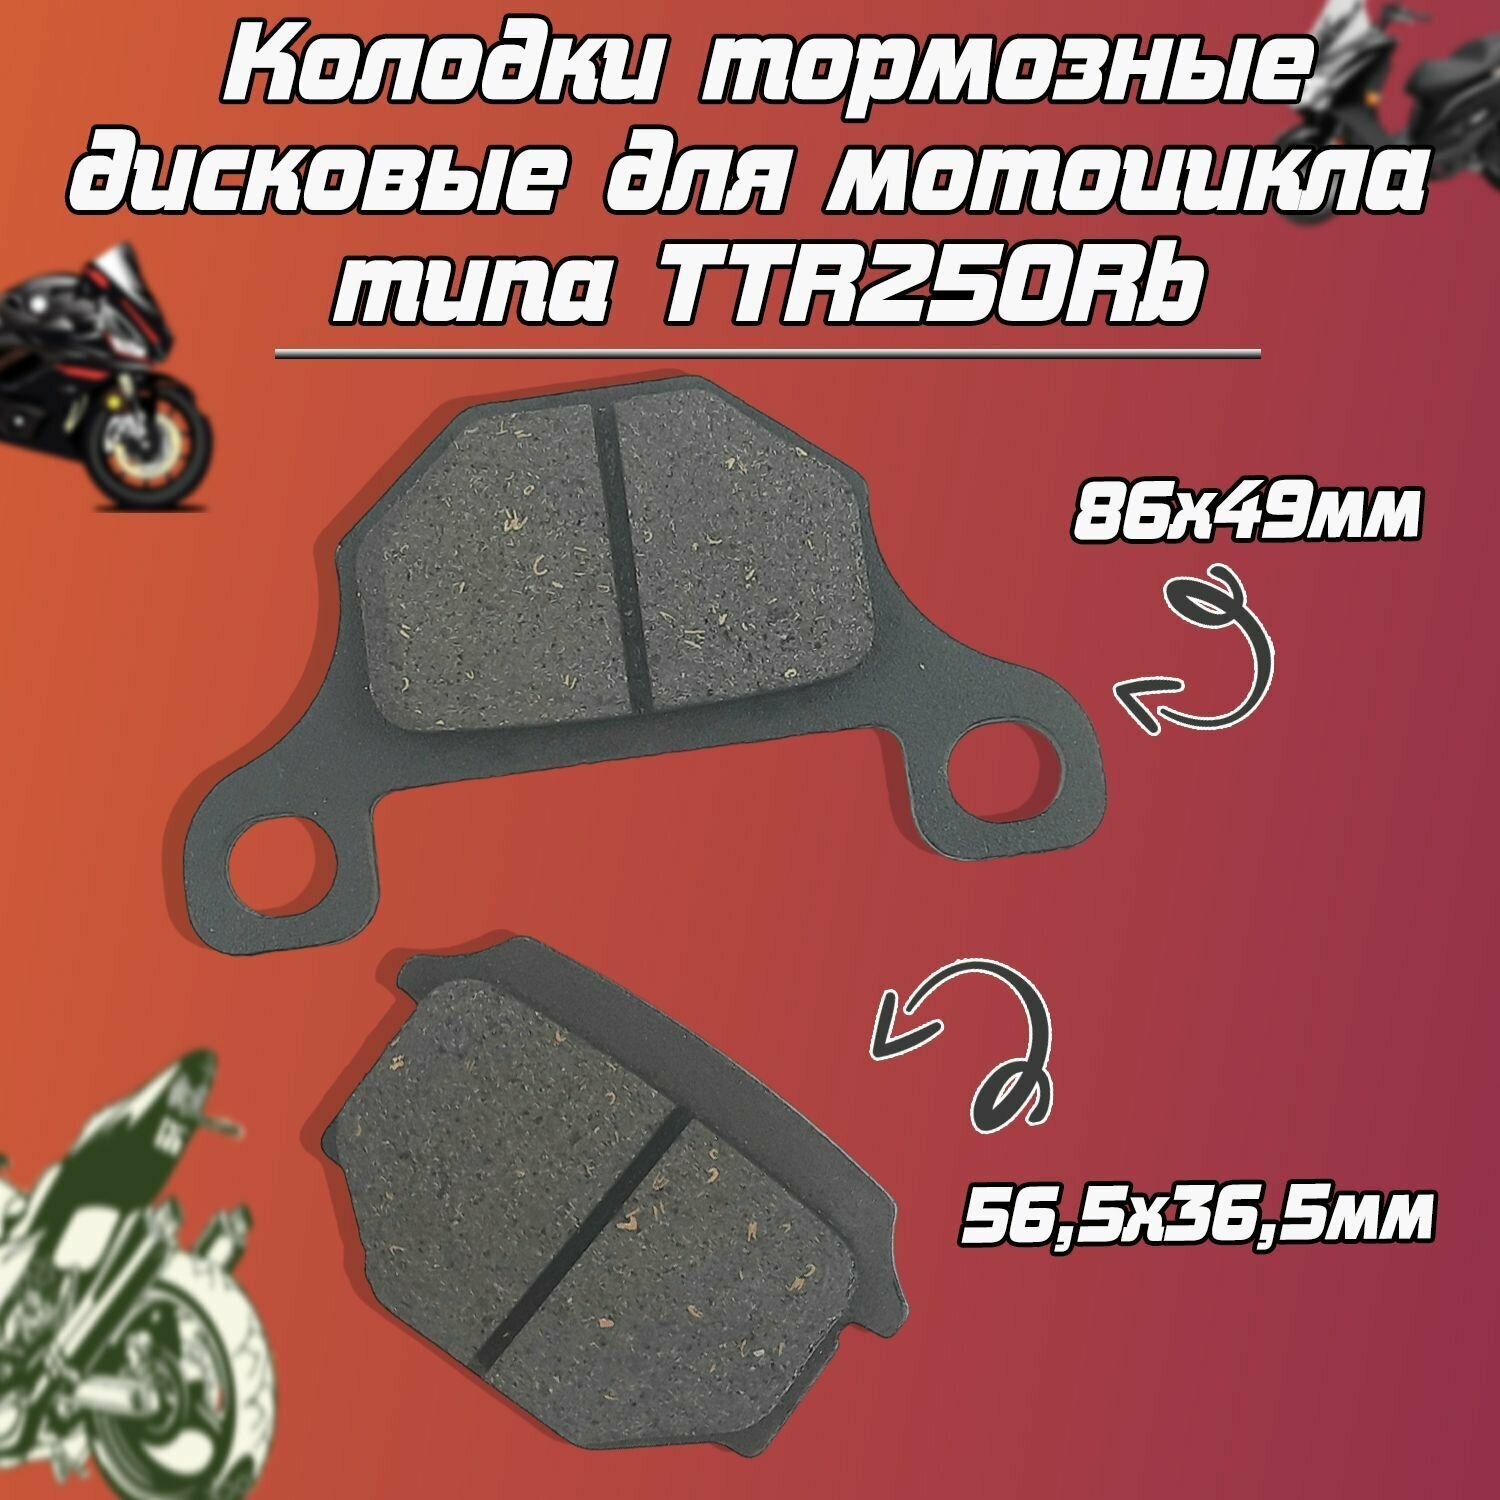 Колодки тормозные дисковые для мотоцикла типа TTR250Rb, GR (зад.).